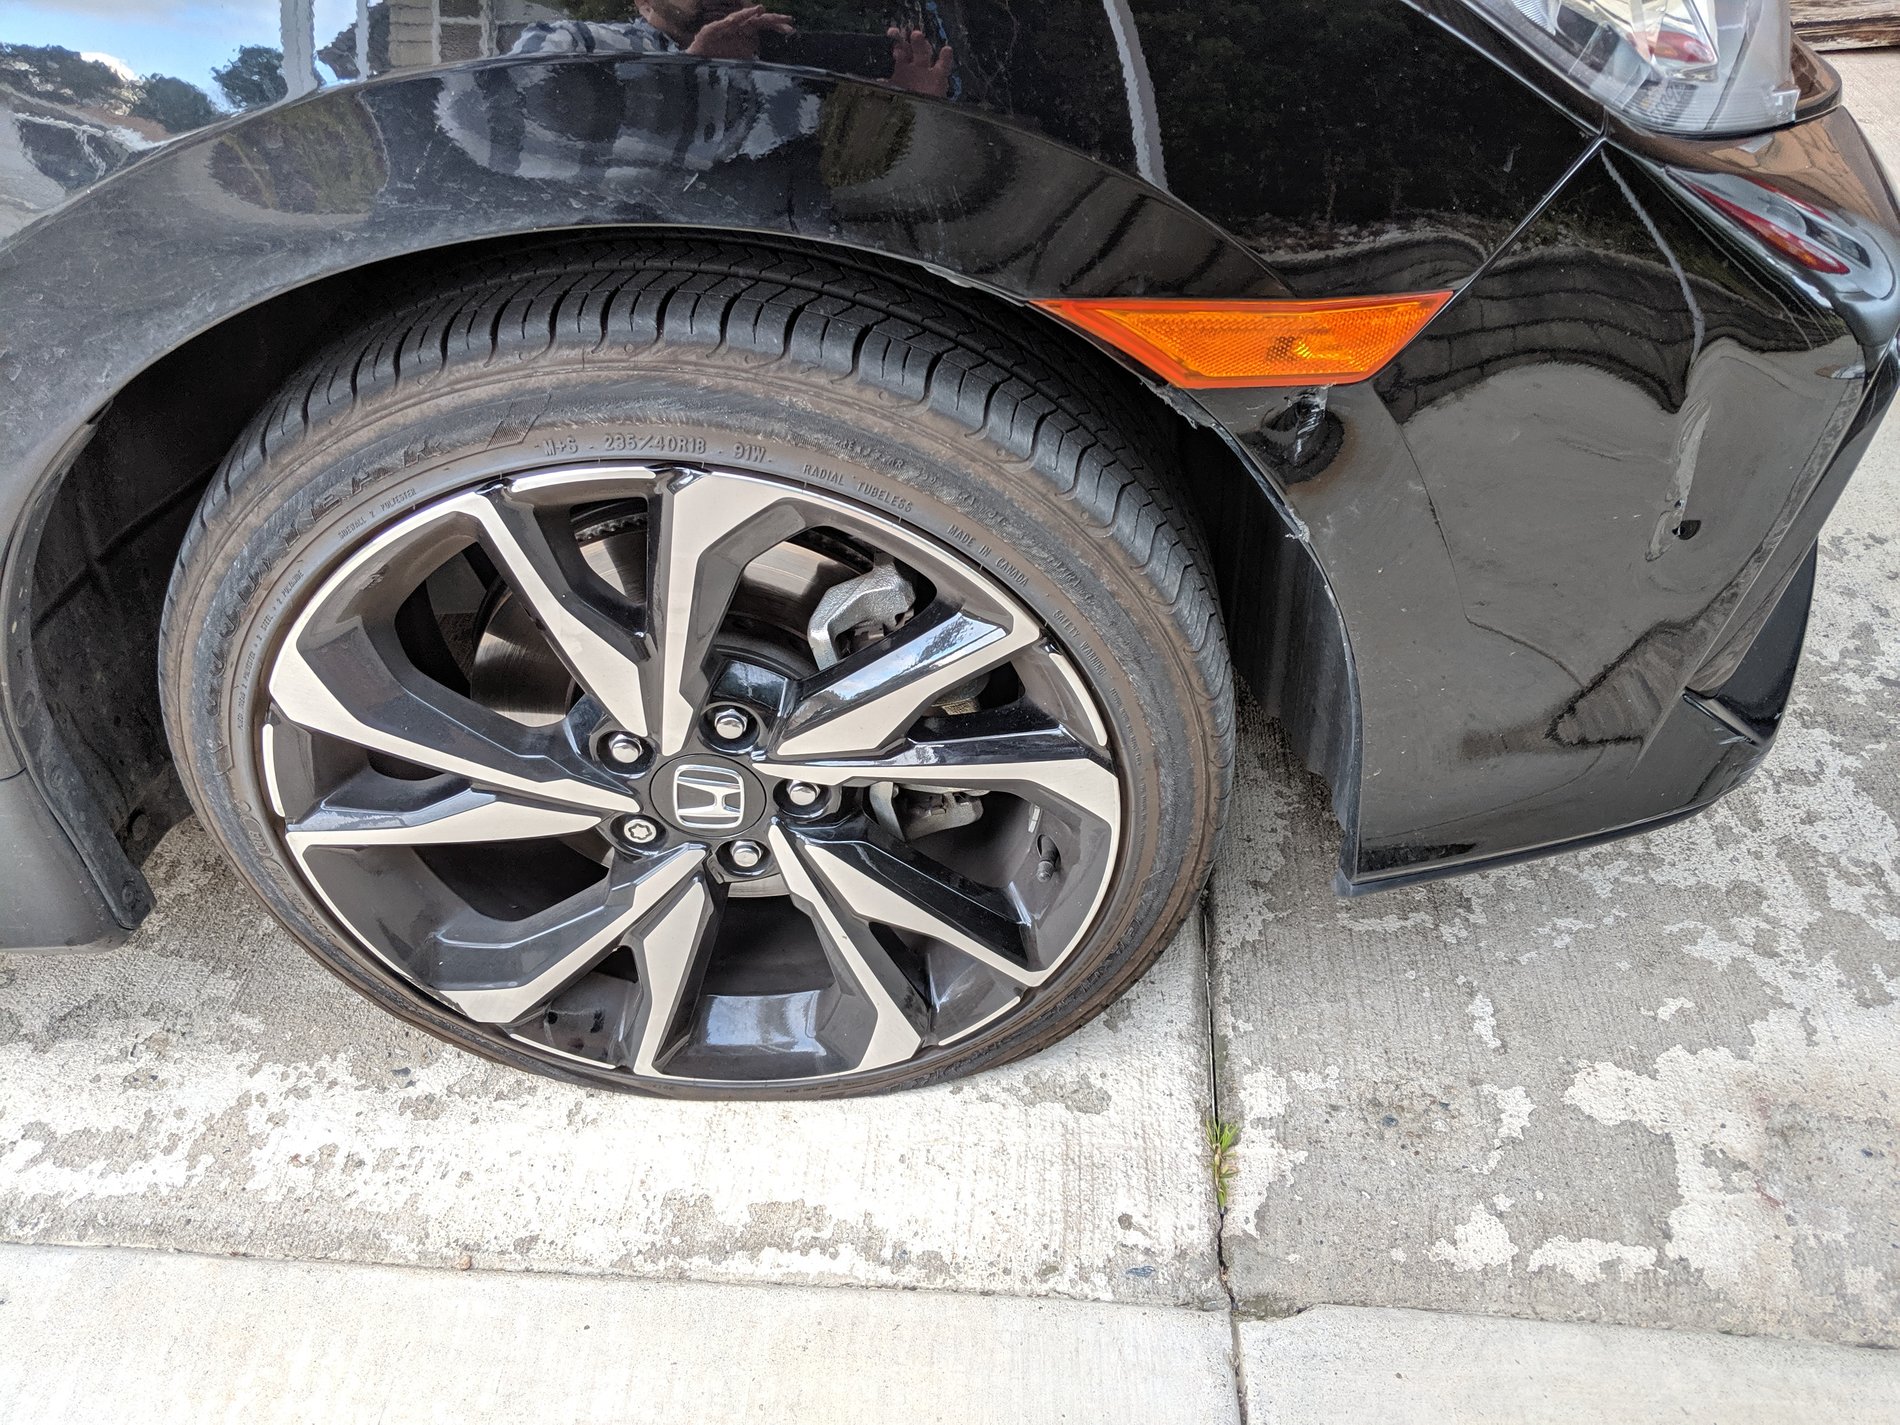 Honda Civic 10th gen Pothole vs Civic Si IMG_20190523_071101_1